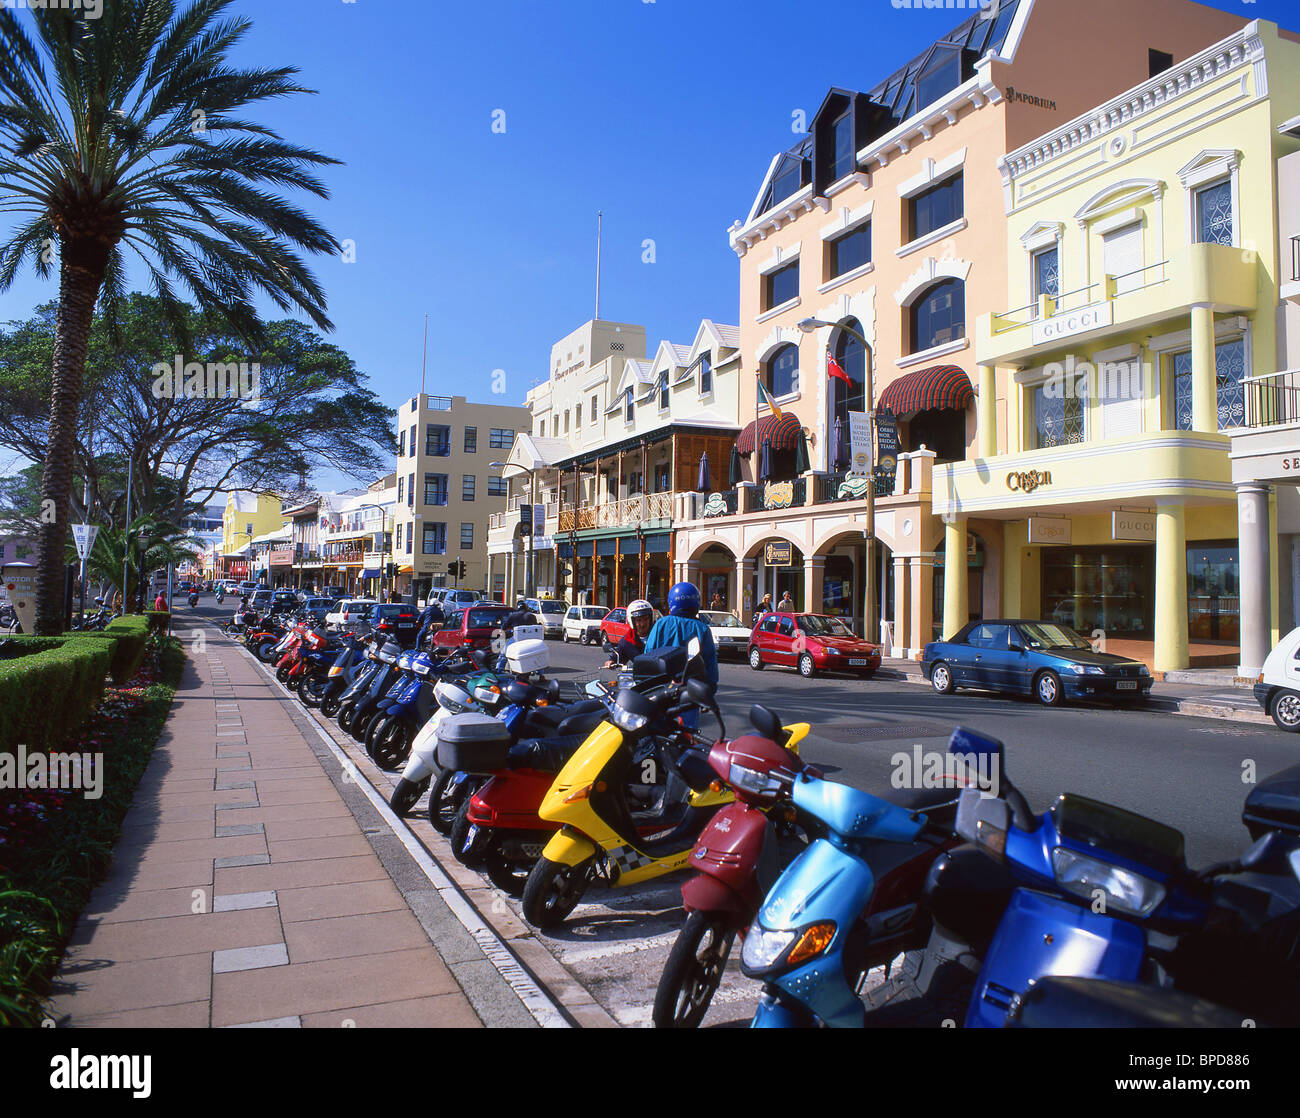 Edificios coloniales de colores pastel, Front Street, Hamilton, Pembroke, Bermuda Parroquial Foto de stock